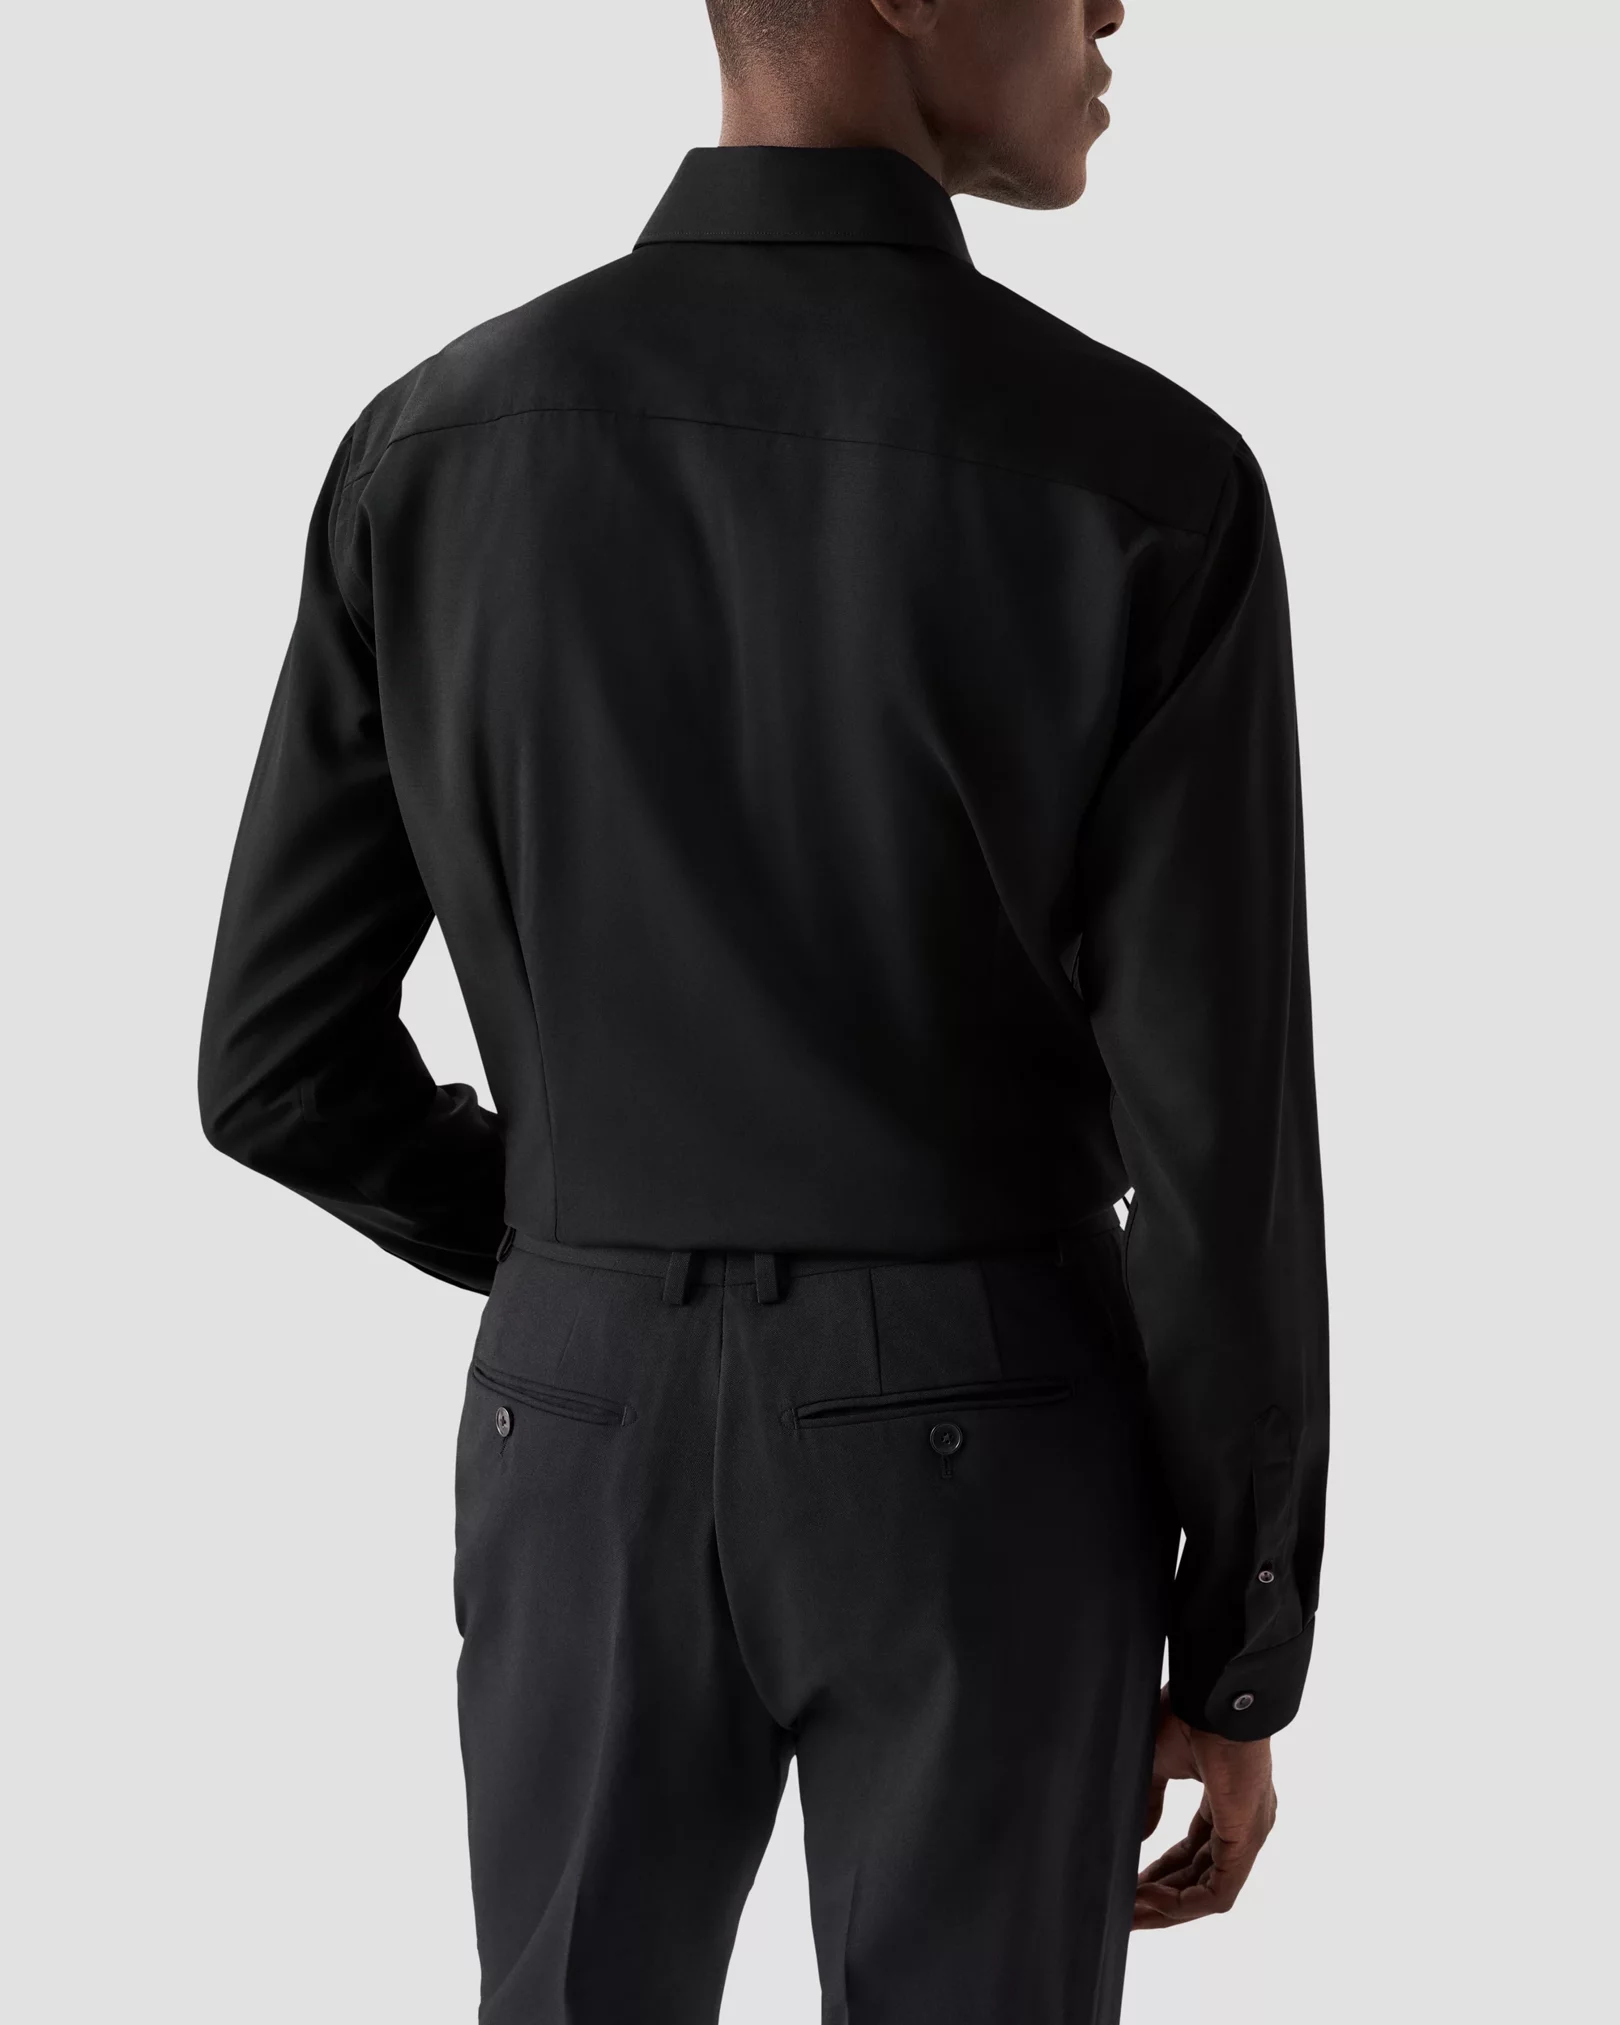 Eton - Black Merino Wool Shirt